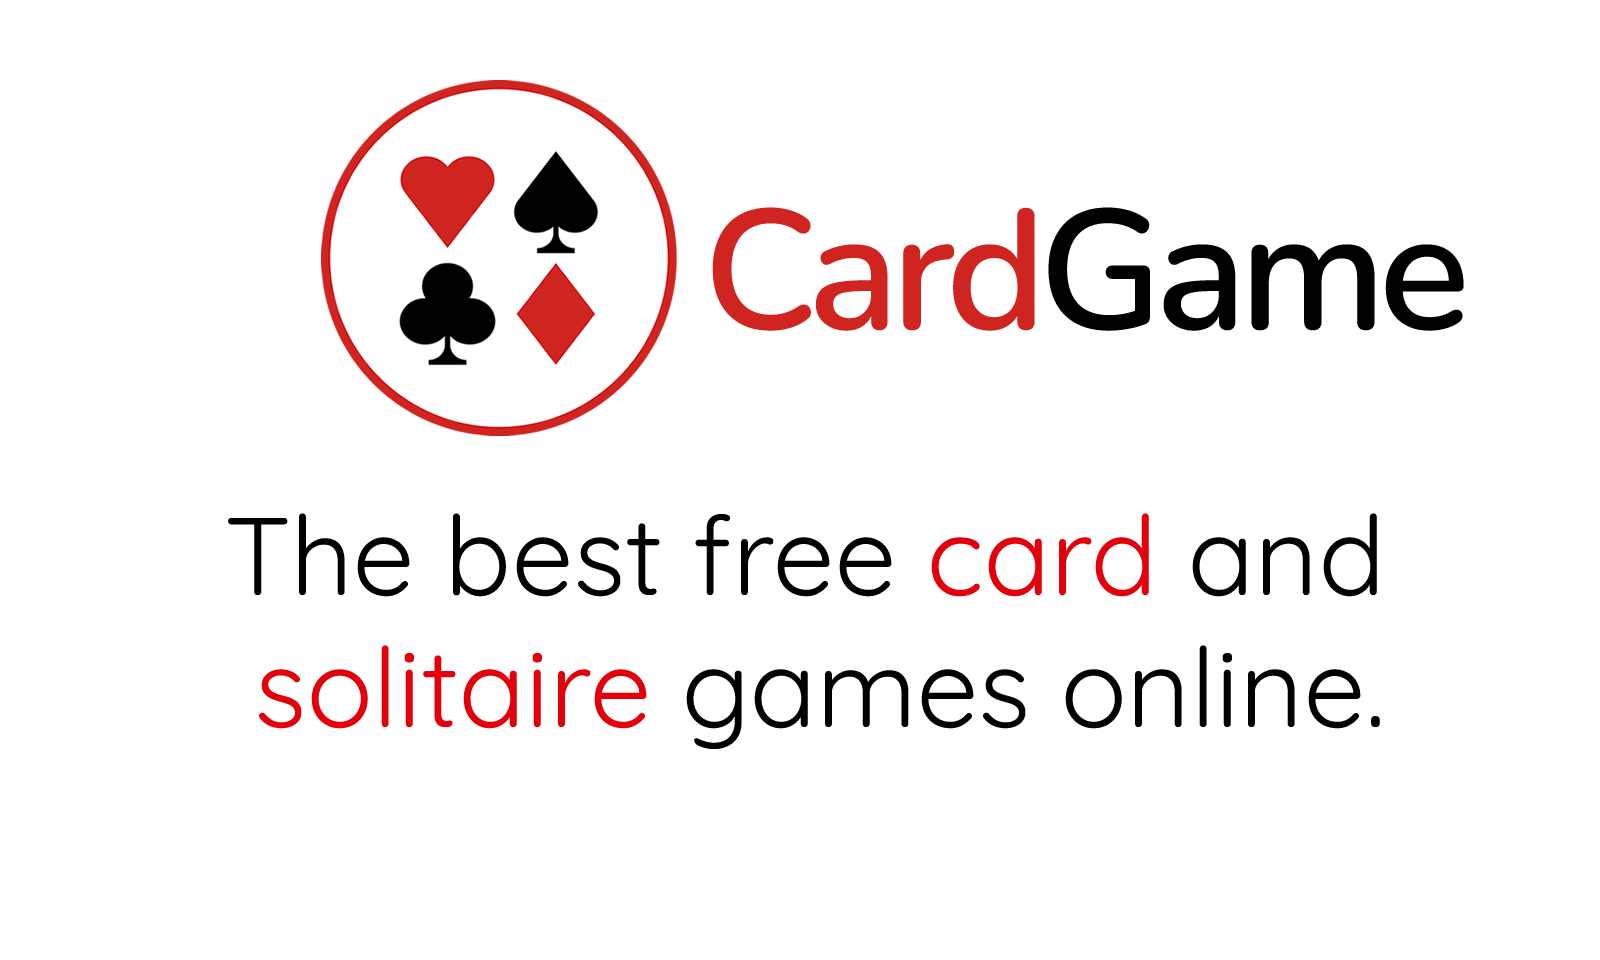 Freecell Solitaire: gratis kaartspel, online te spelen zonder